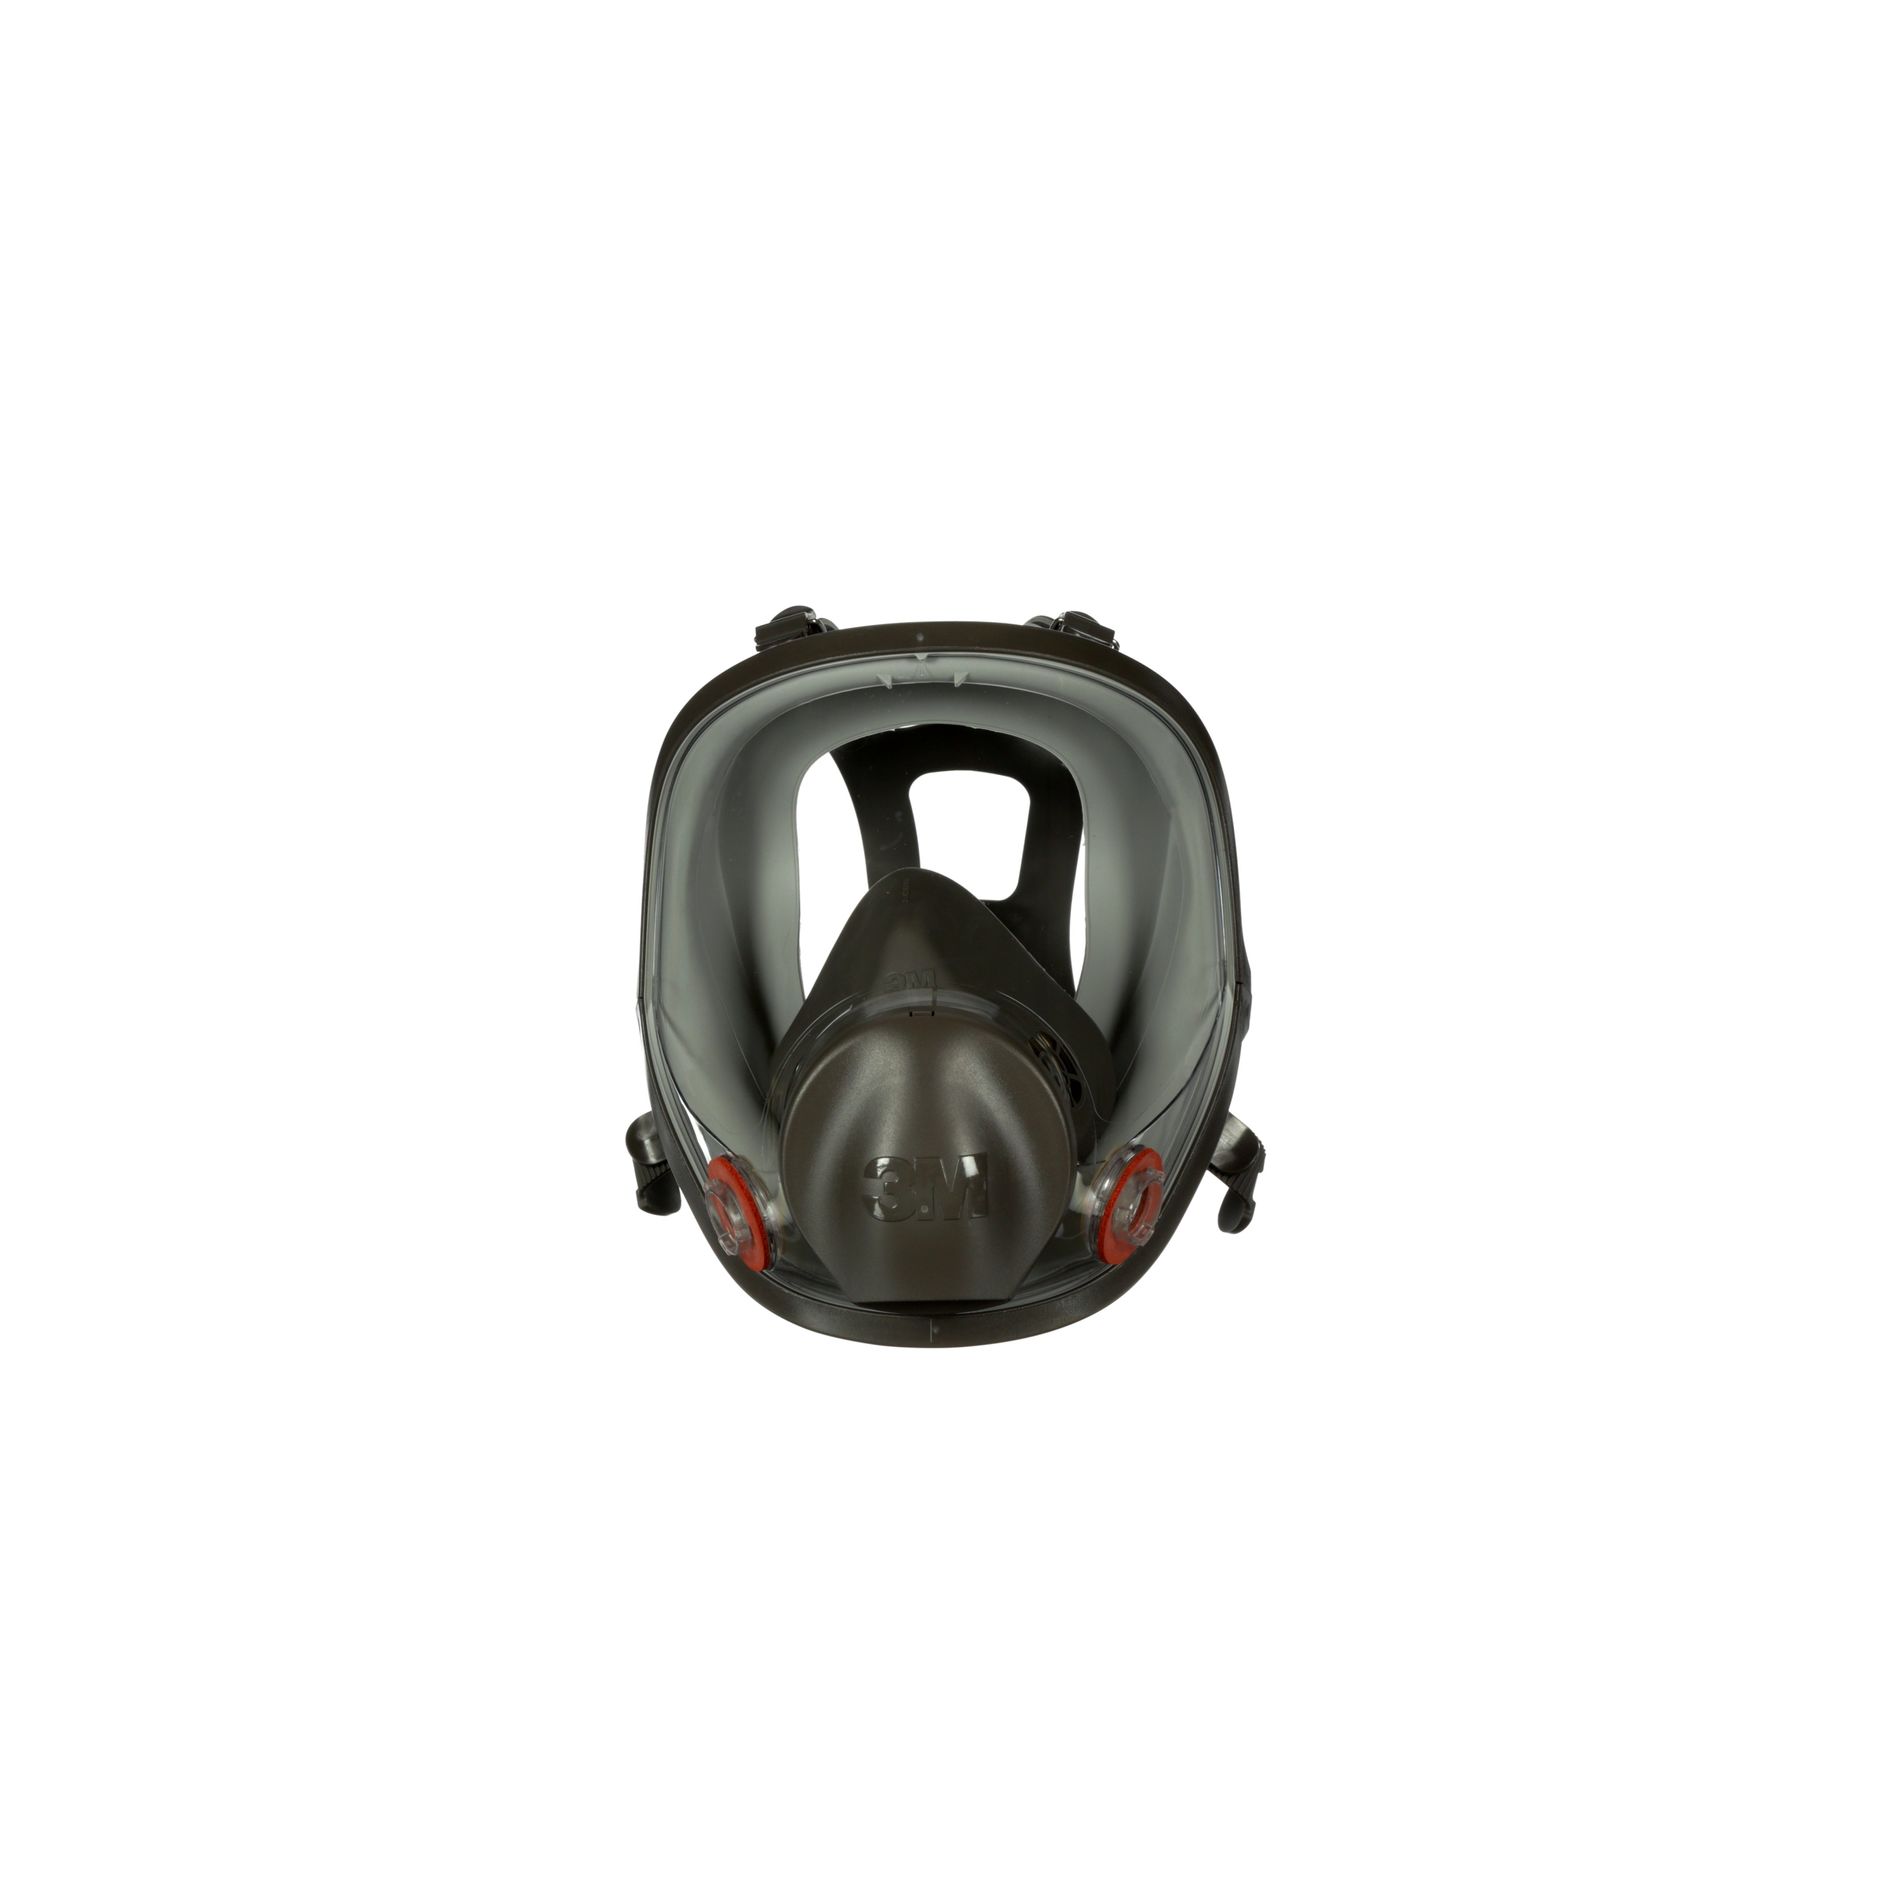 Masque complet protection respiratoire 6800 – Série 6000 EN 136